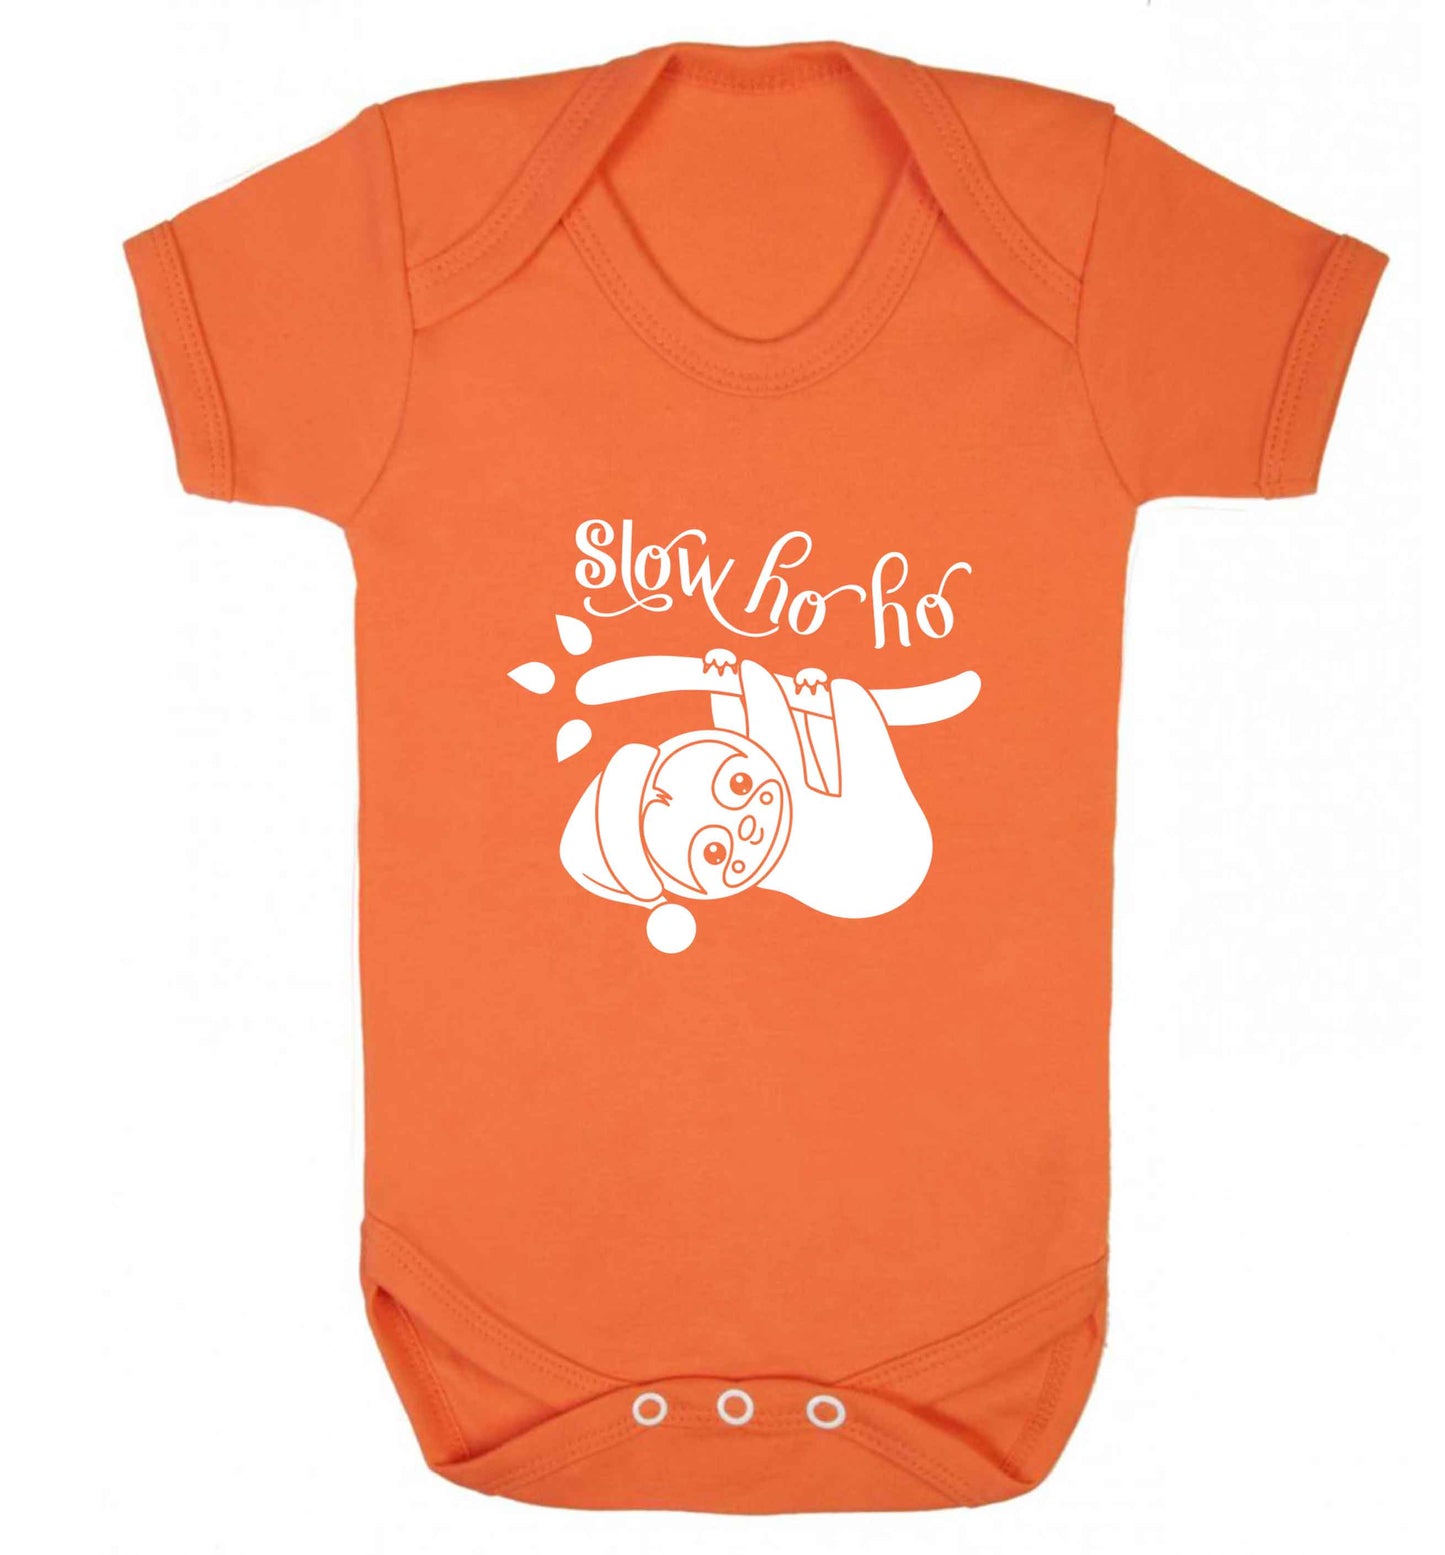 Slow Ho Ho baby vest orange 18-24 months